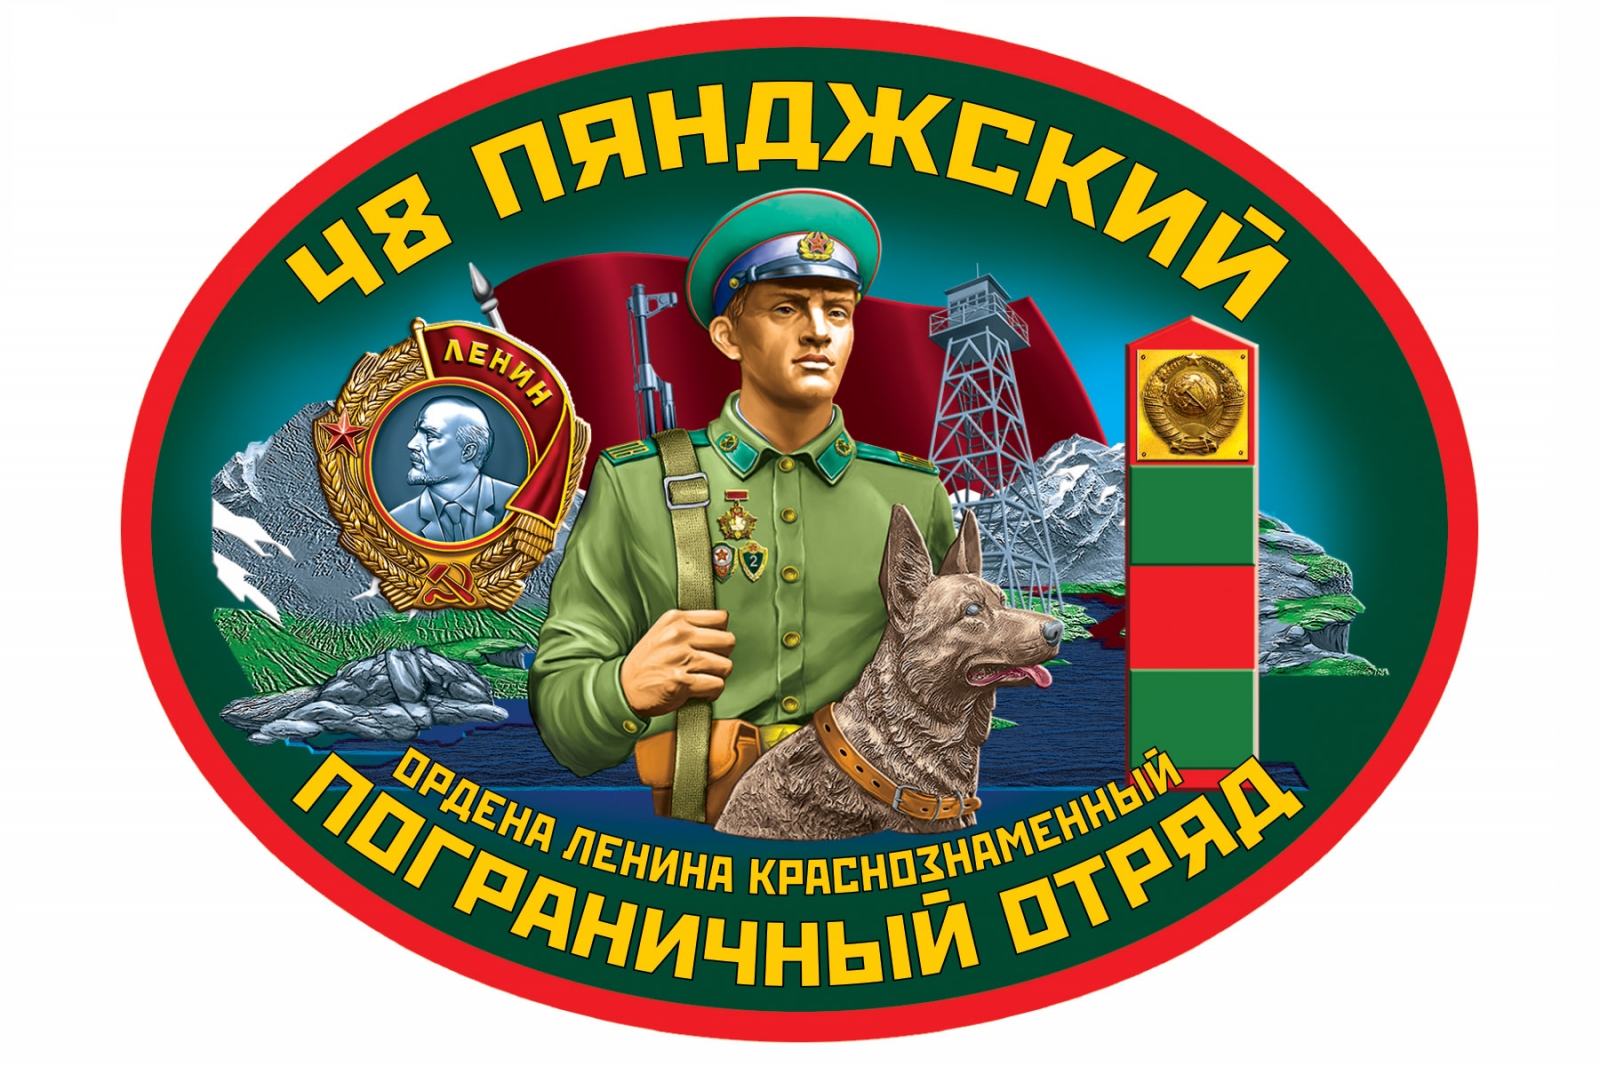 Сортавальский пограничный отряд наклейка